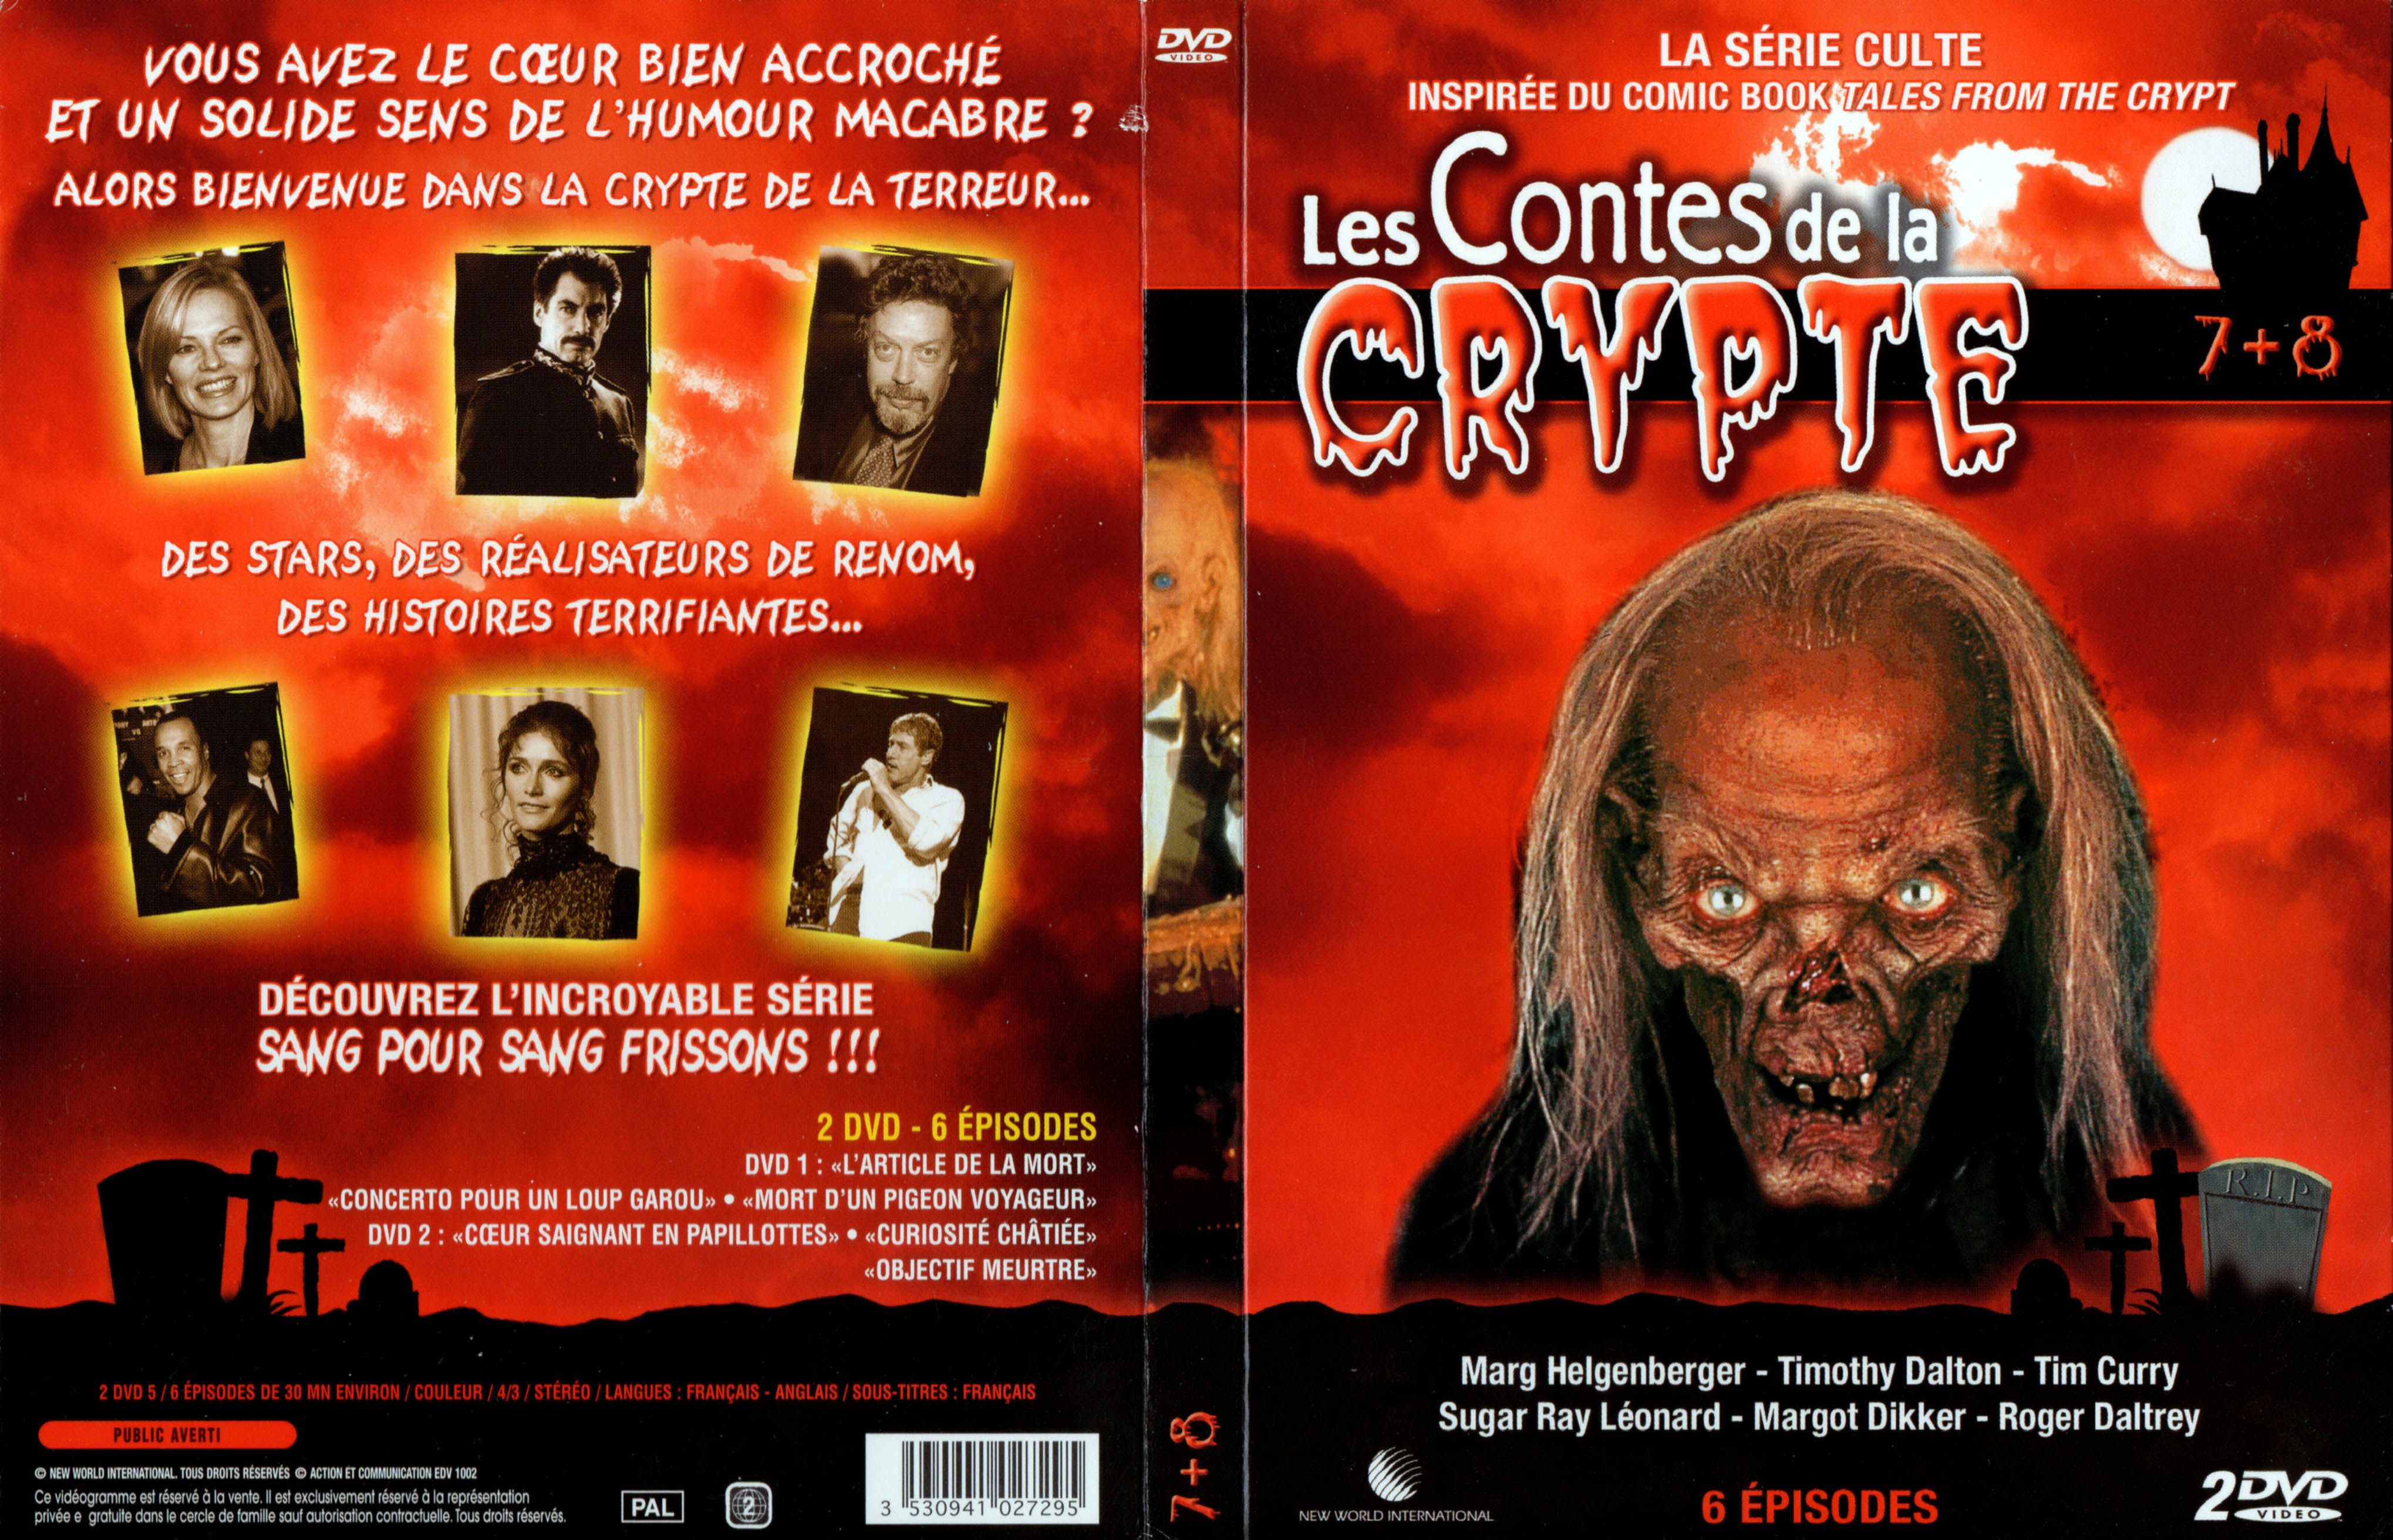 Jaquette DVD Les contes de la crypte Vol 7 et 8